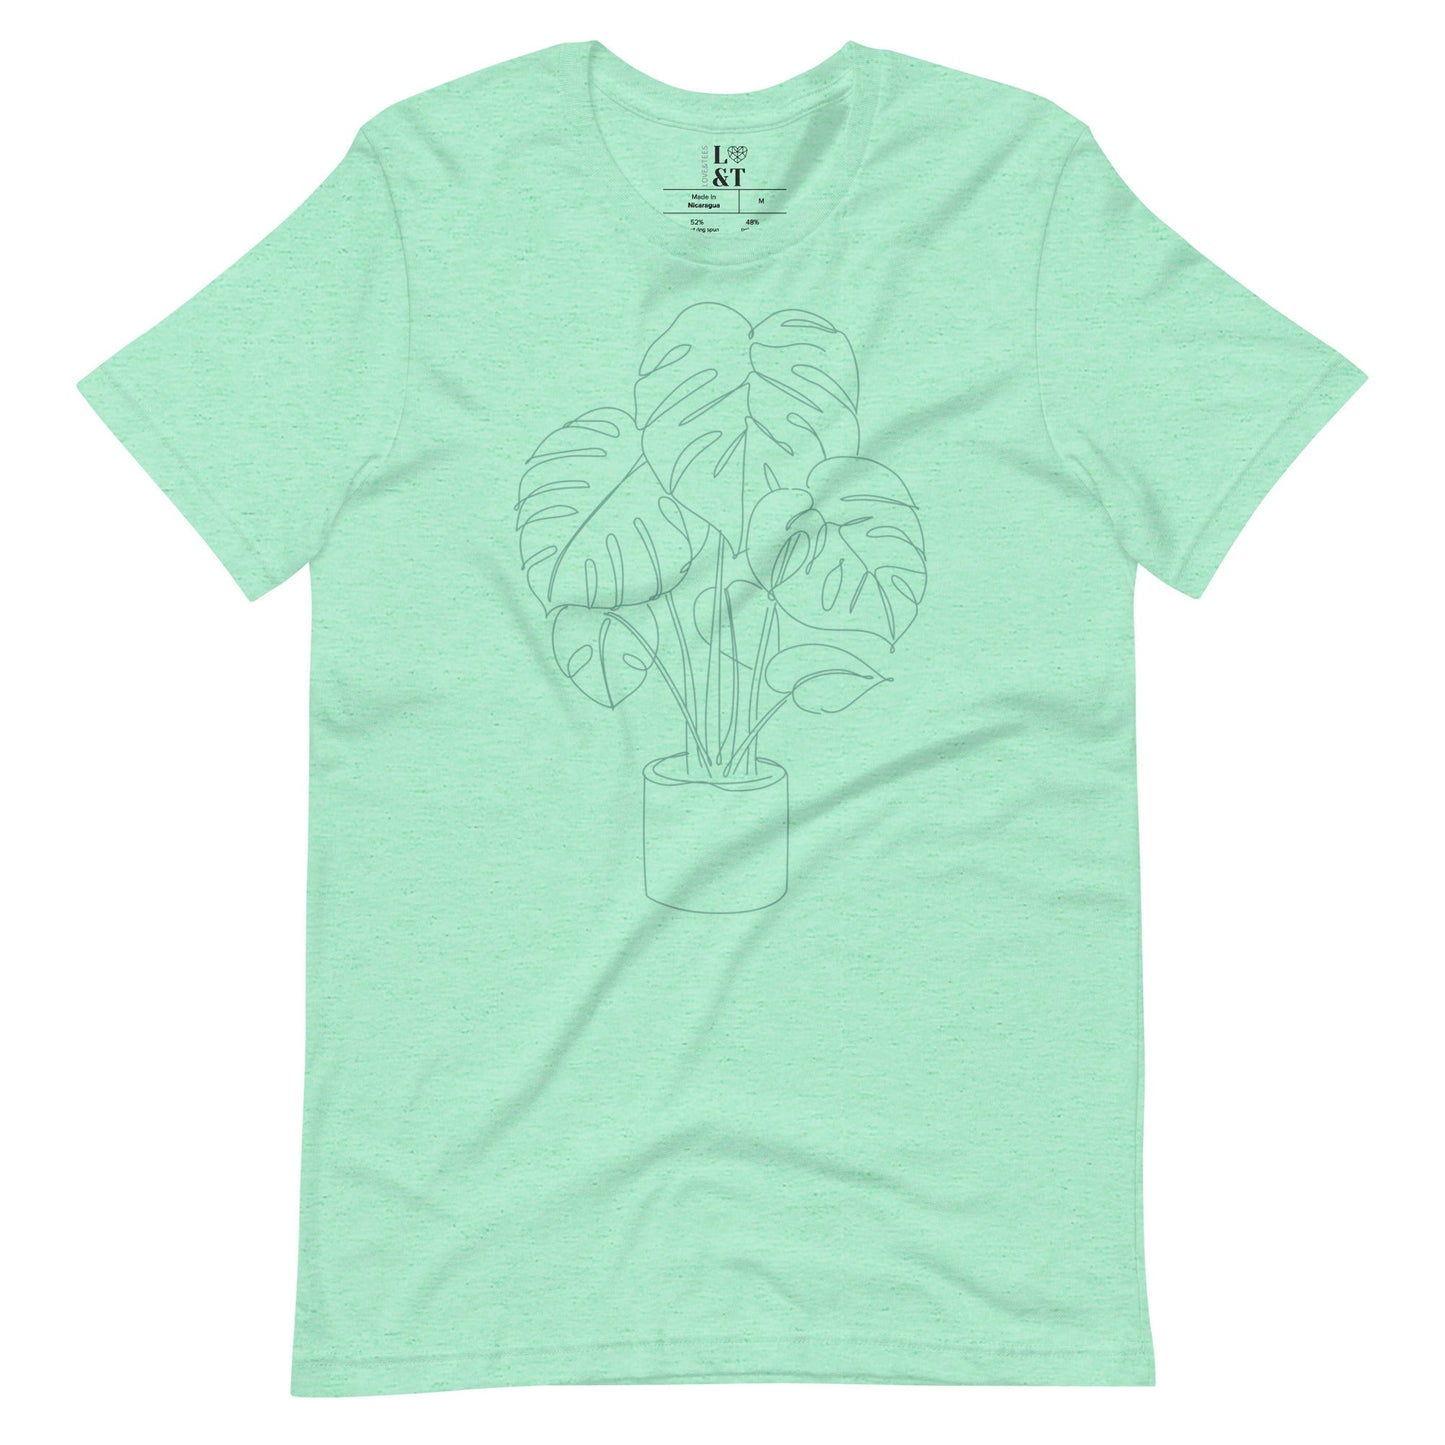 Palm Plant Unisex T-Shirt